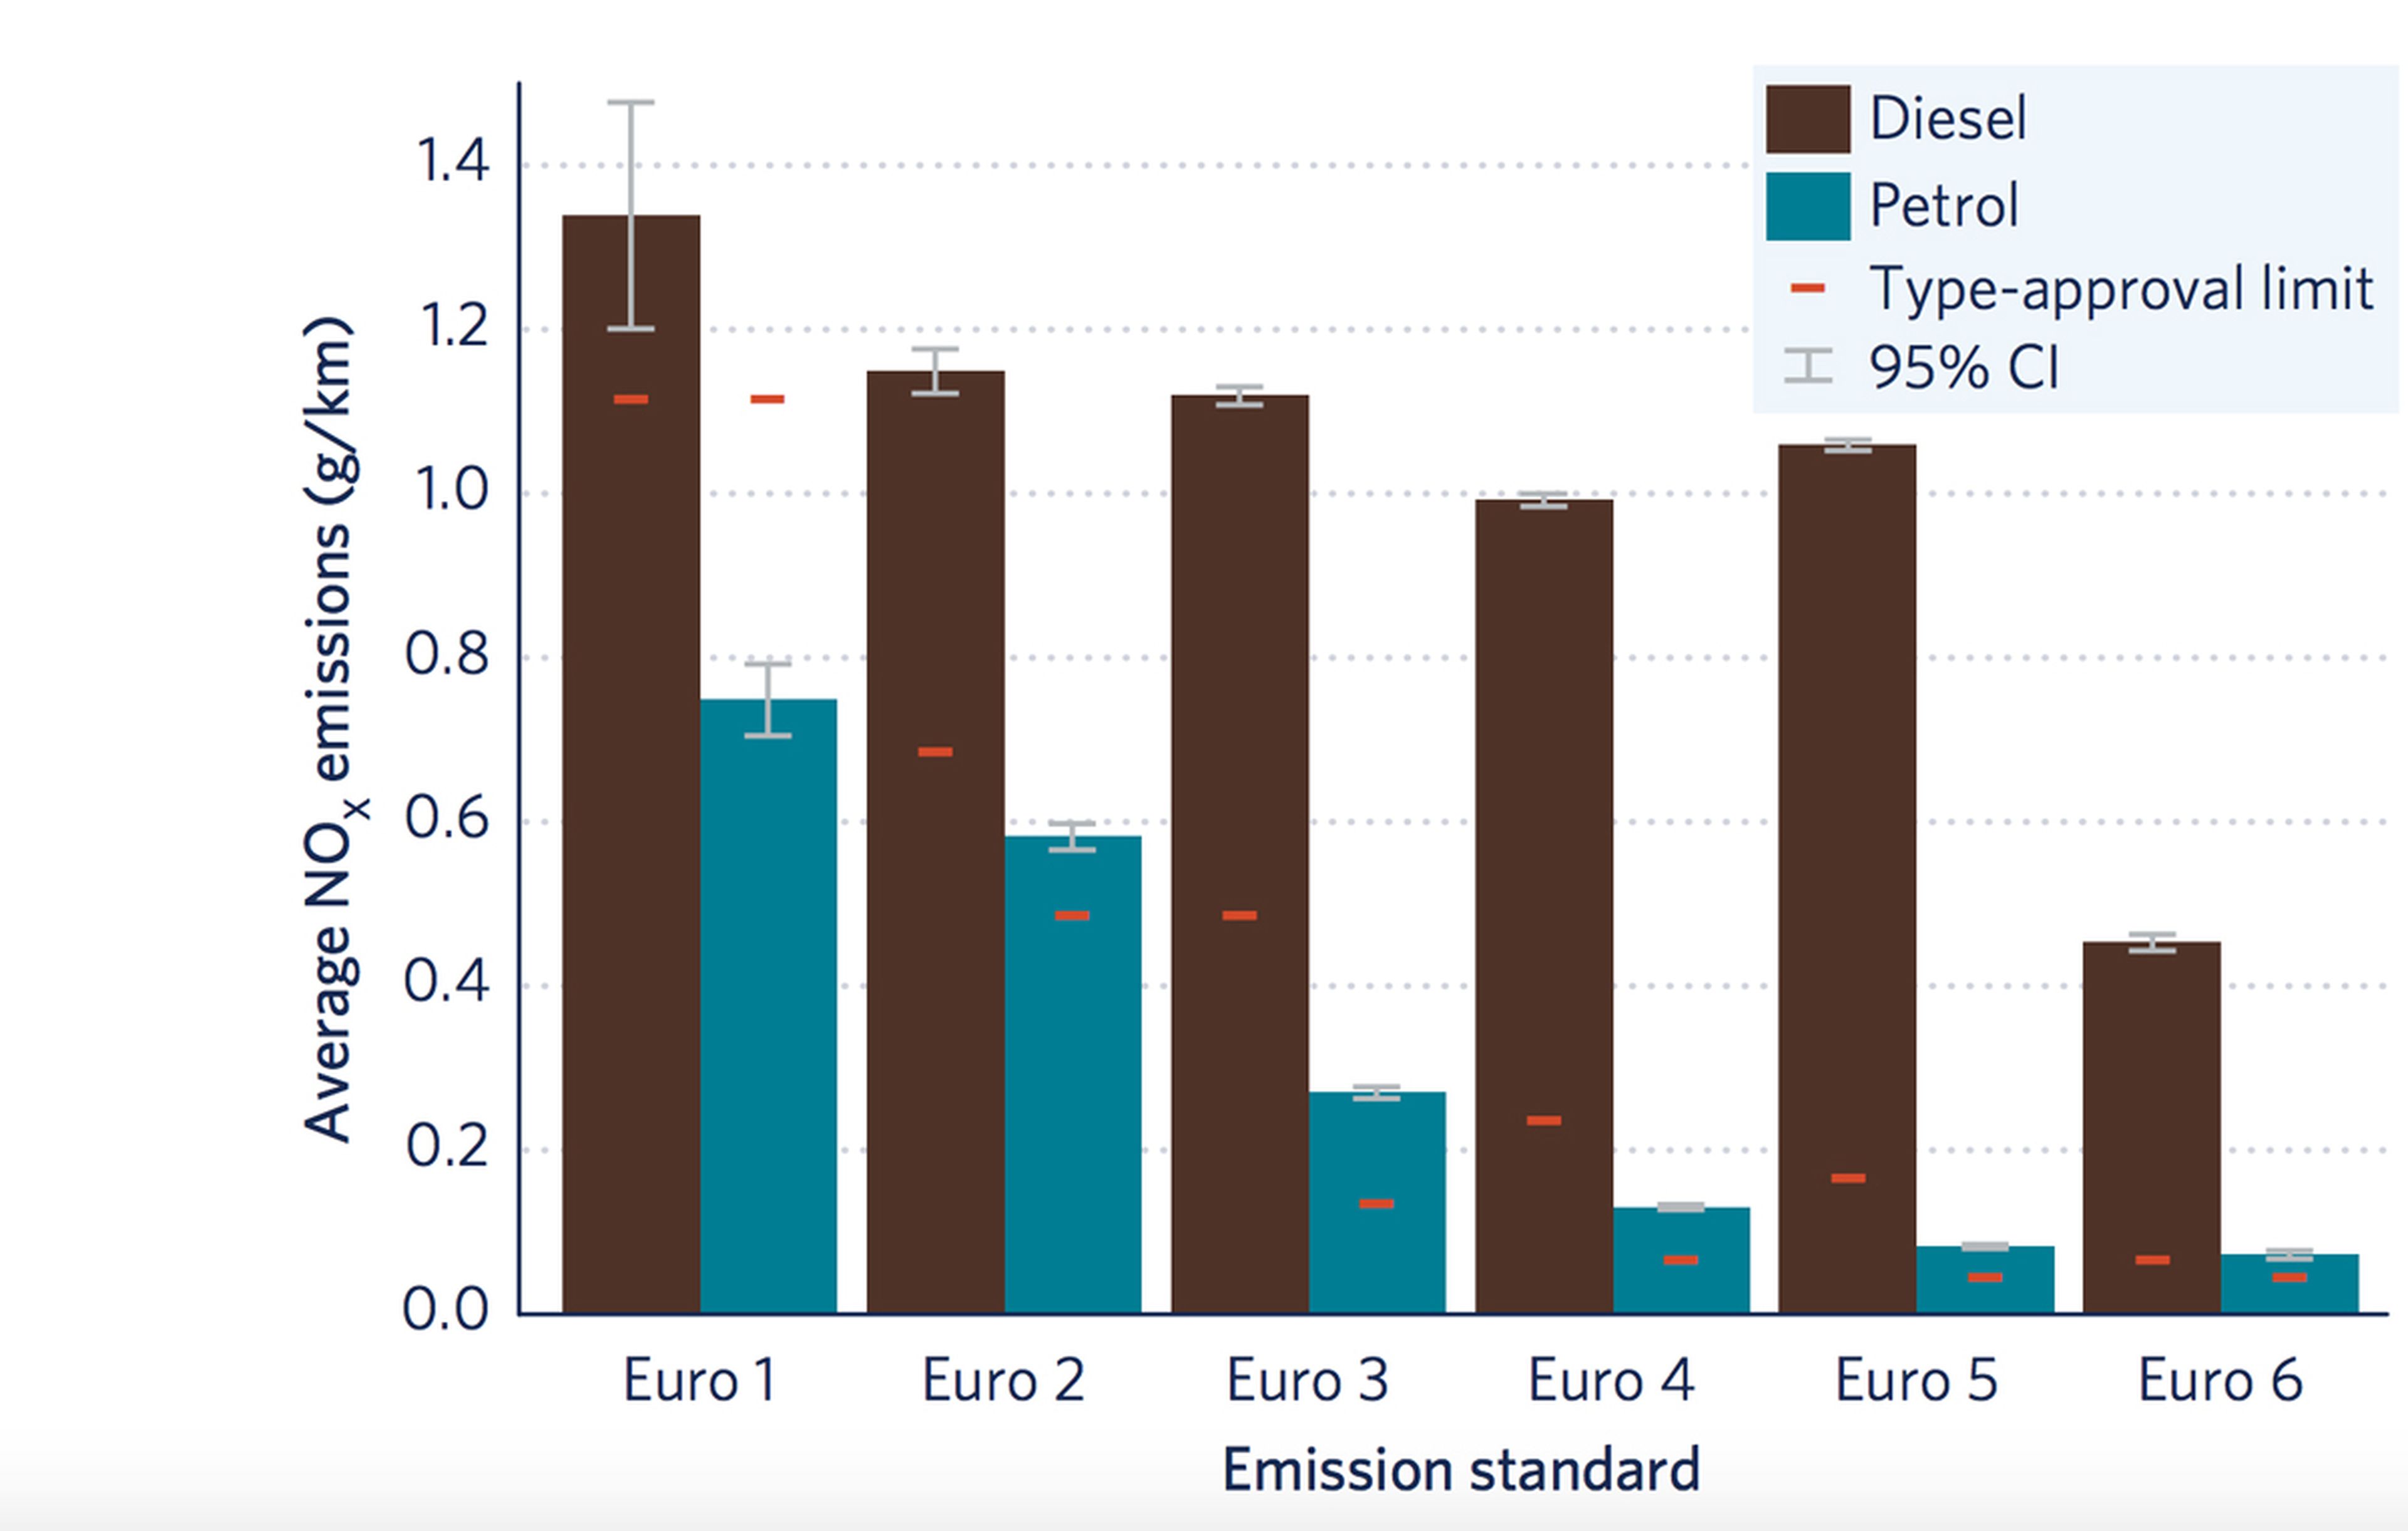 Gráfico que muestra la desviación de las emisiones marcadas por cada norma Euro según los datos del estudio.